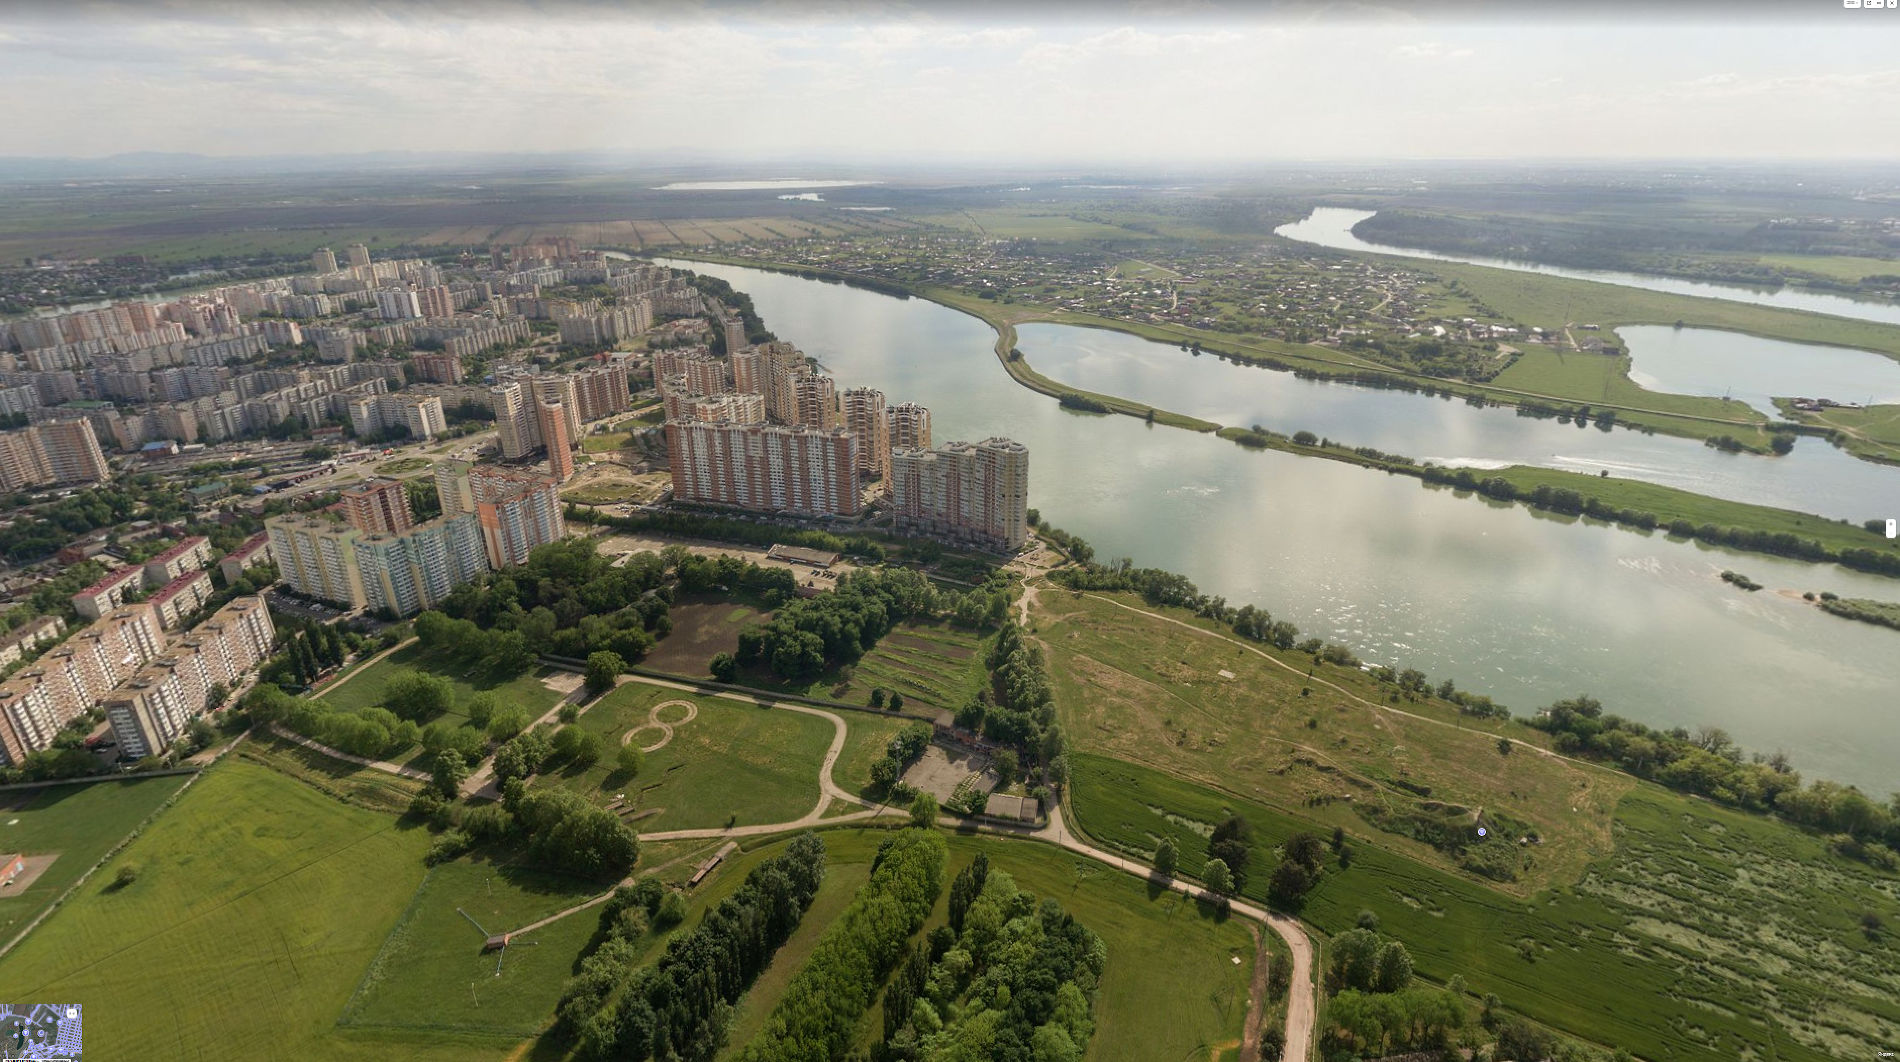 Вид на озера в ауле Старобжегокай и ЮМР от КубГАУ © Скриншот панорамы yandex.ru/maps 2018 года